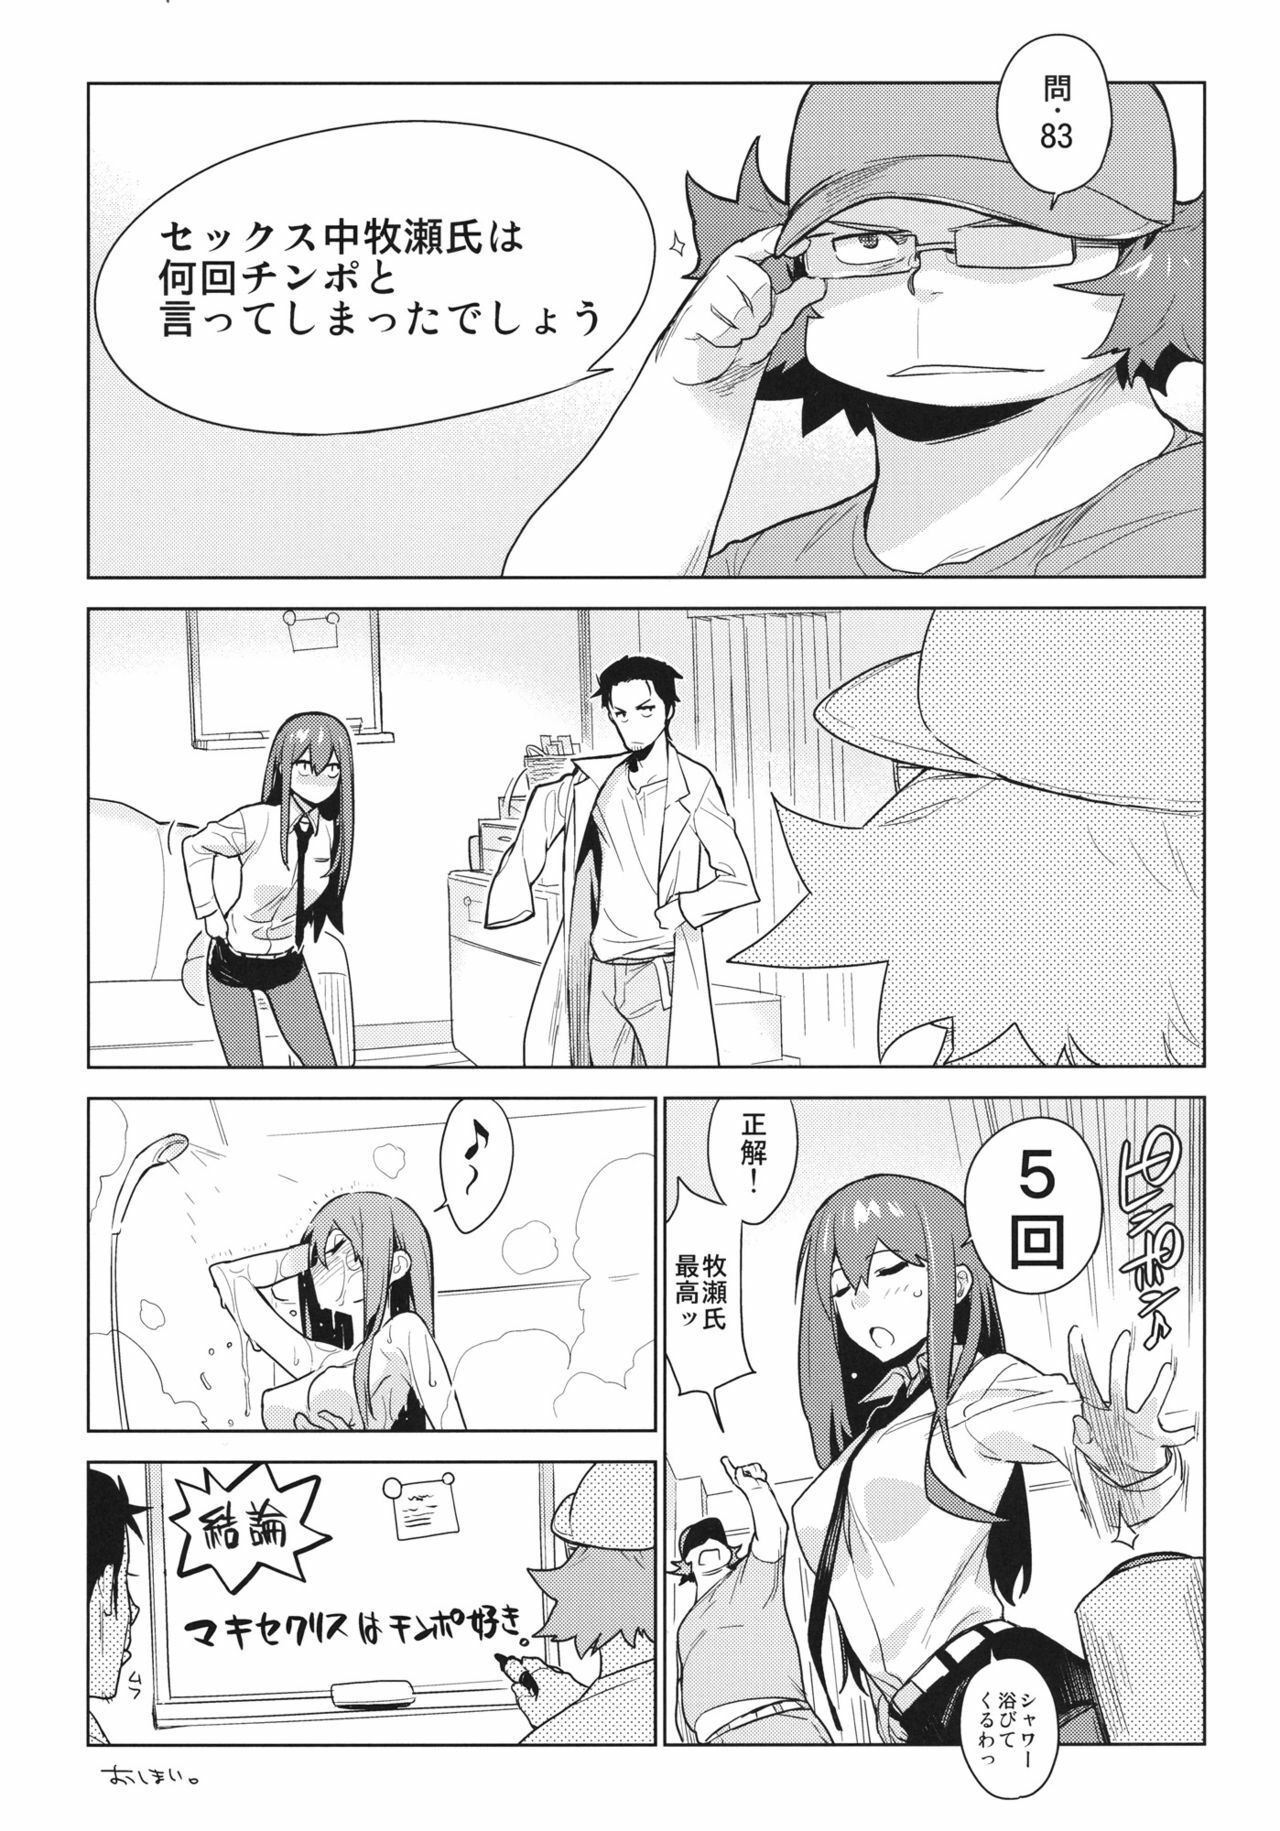 [enuma elish (Yukimi)] OCD (Steins;Gate) page 11 full